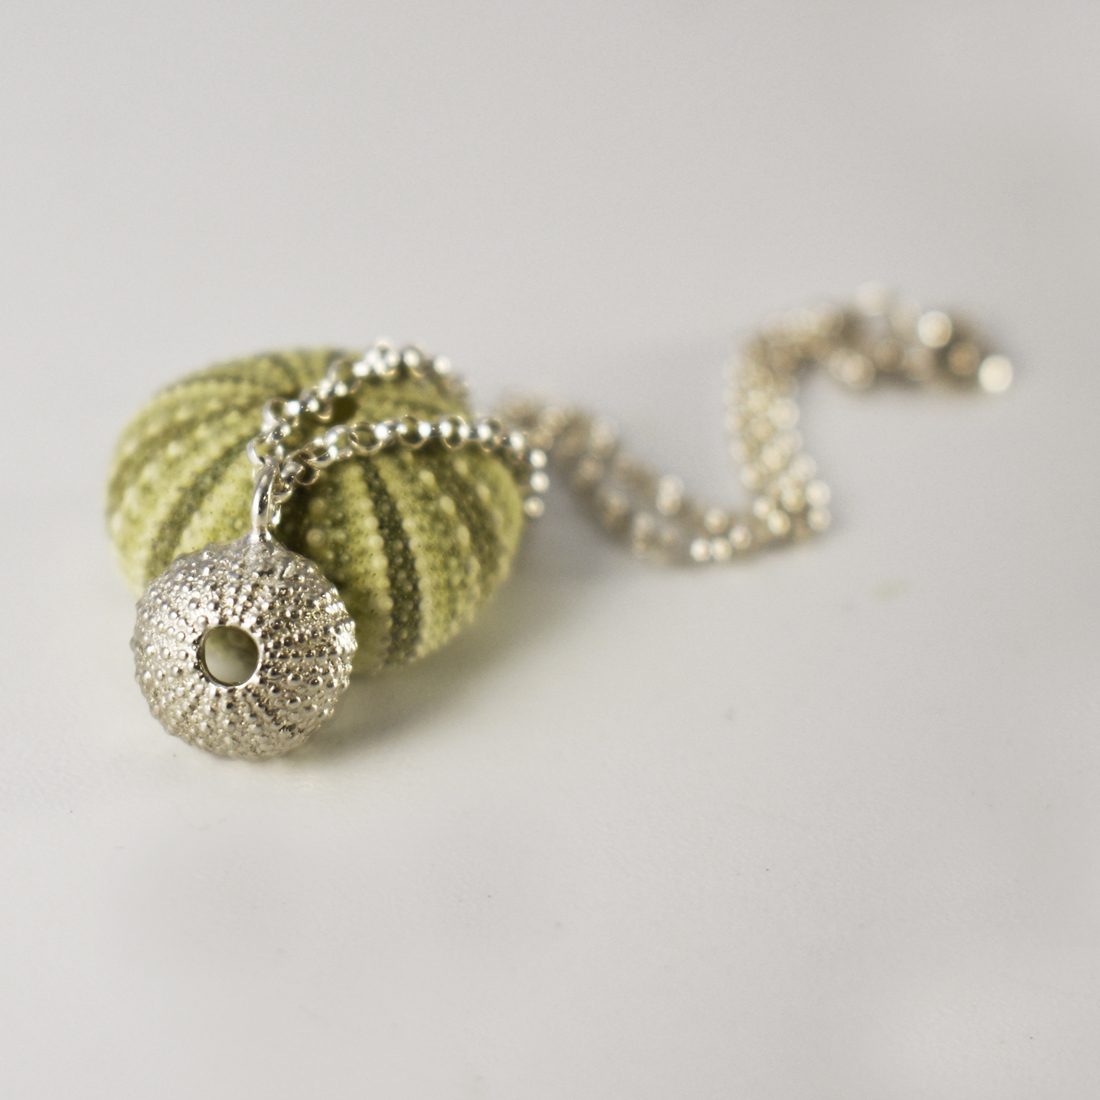 Baby Silver Sea Urchin Bracelet